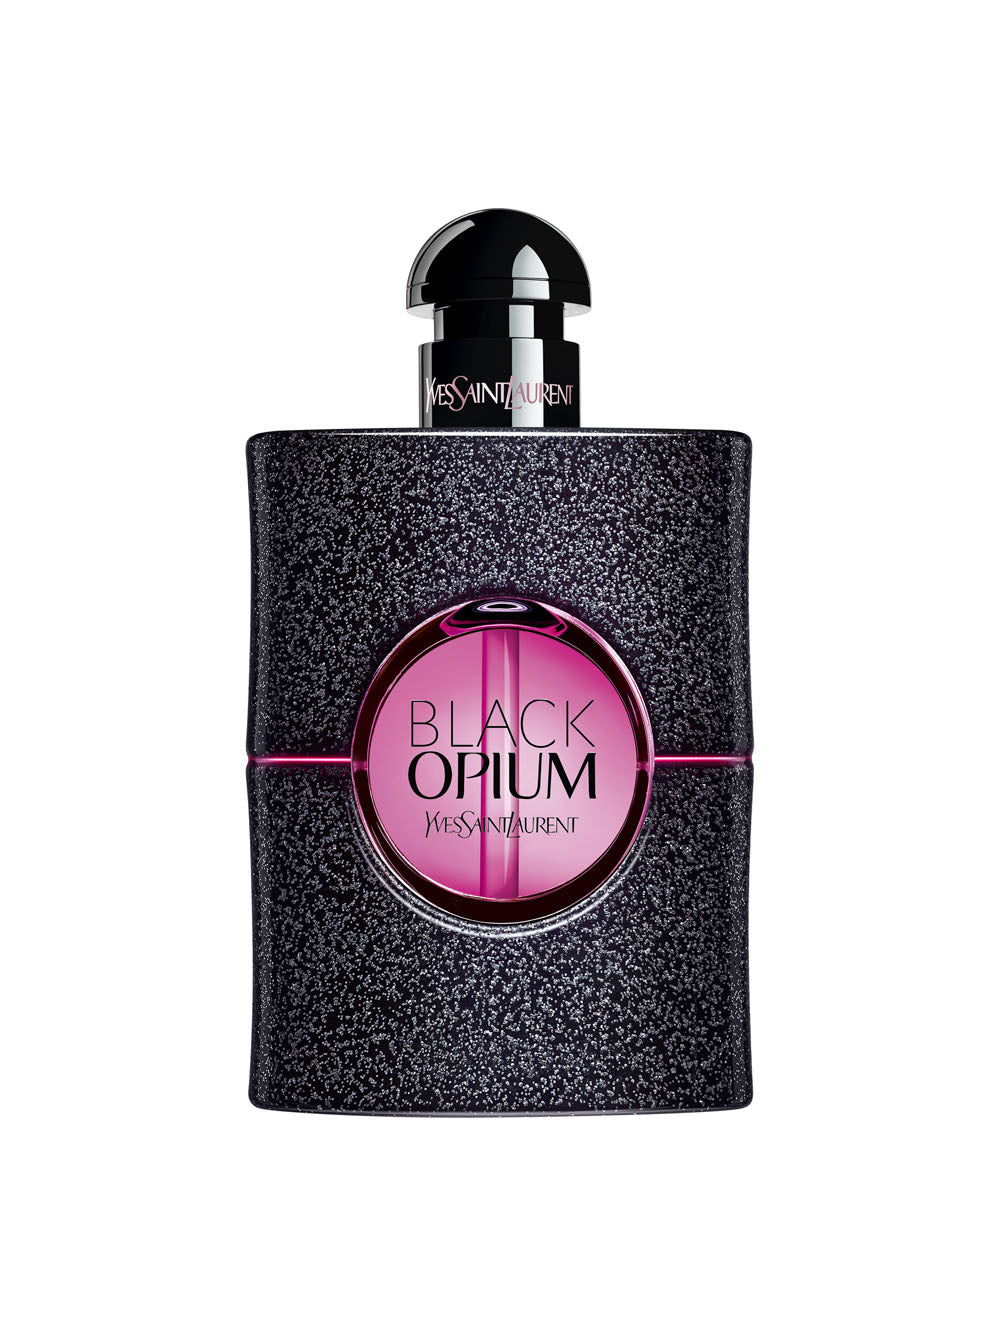 YVES SAINT LAURENT Black Opium Neon Eau de Parfum -75ml